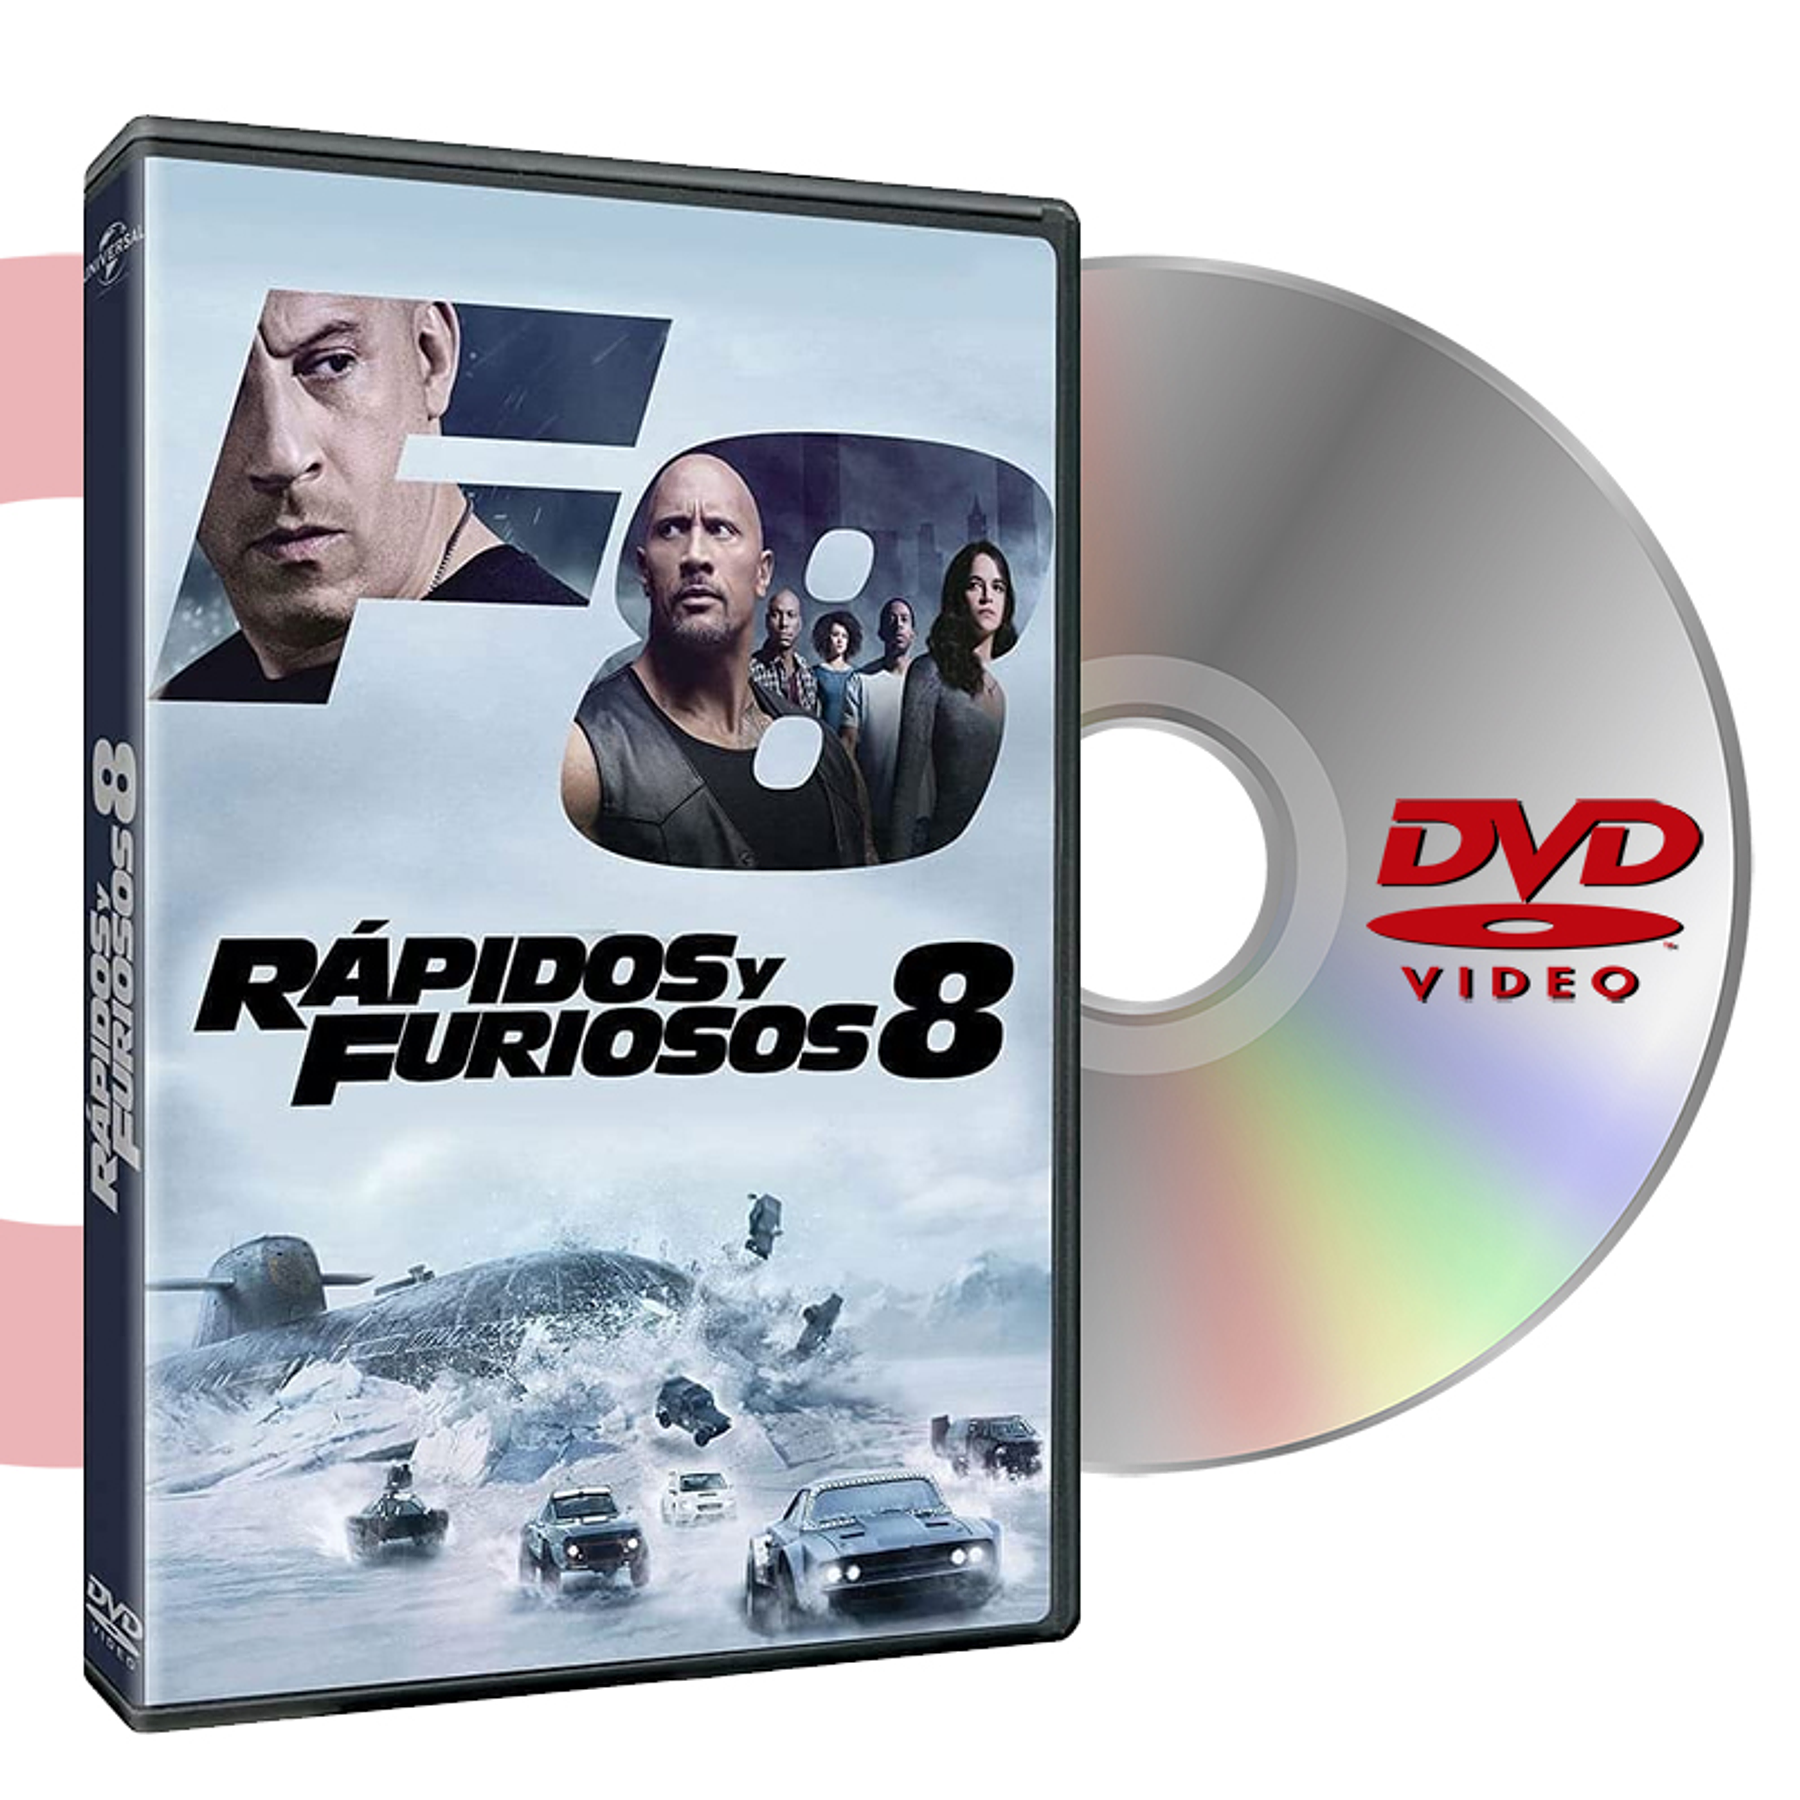 DVD RAPIDOS Y FURIOSOS 8